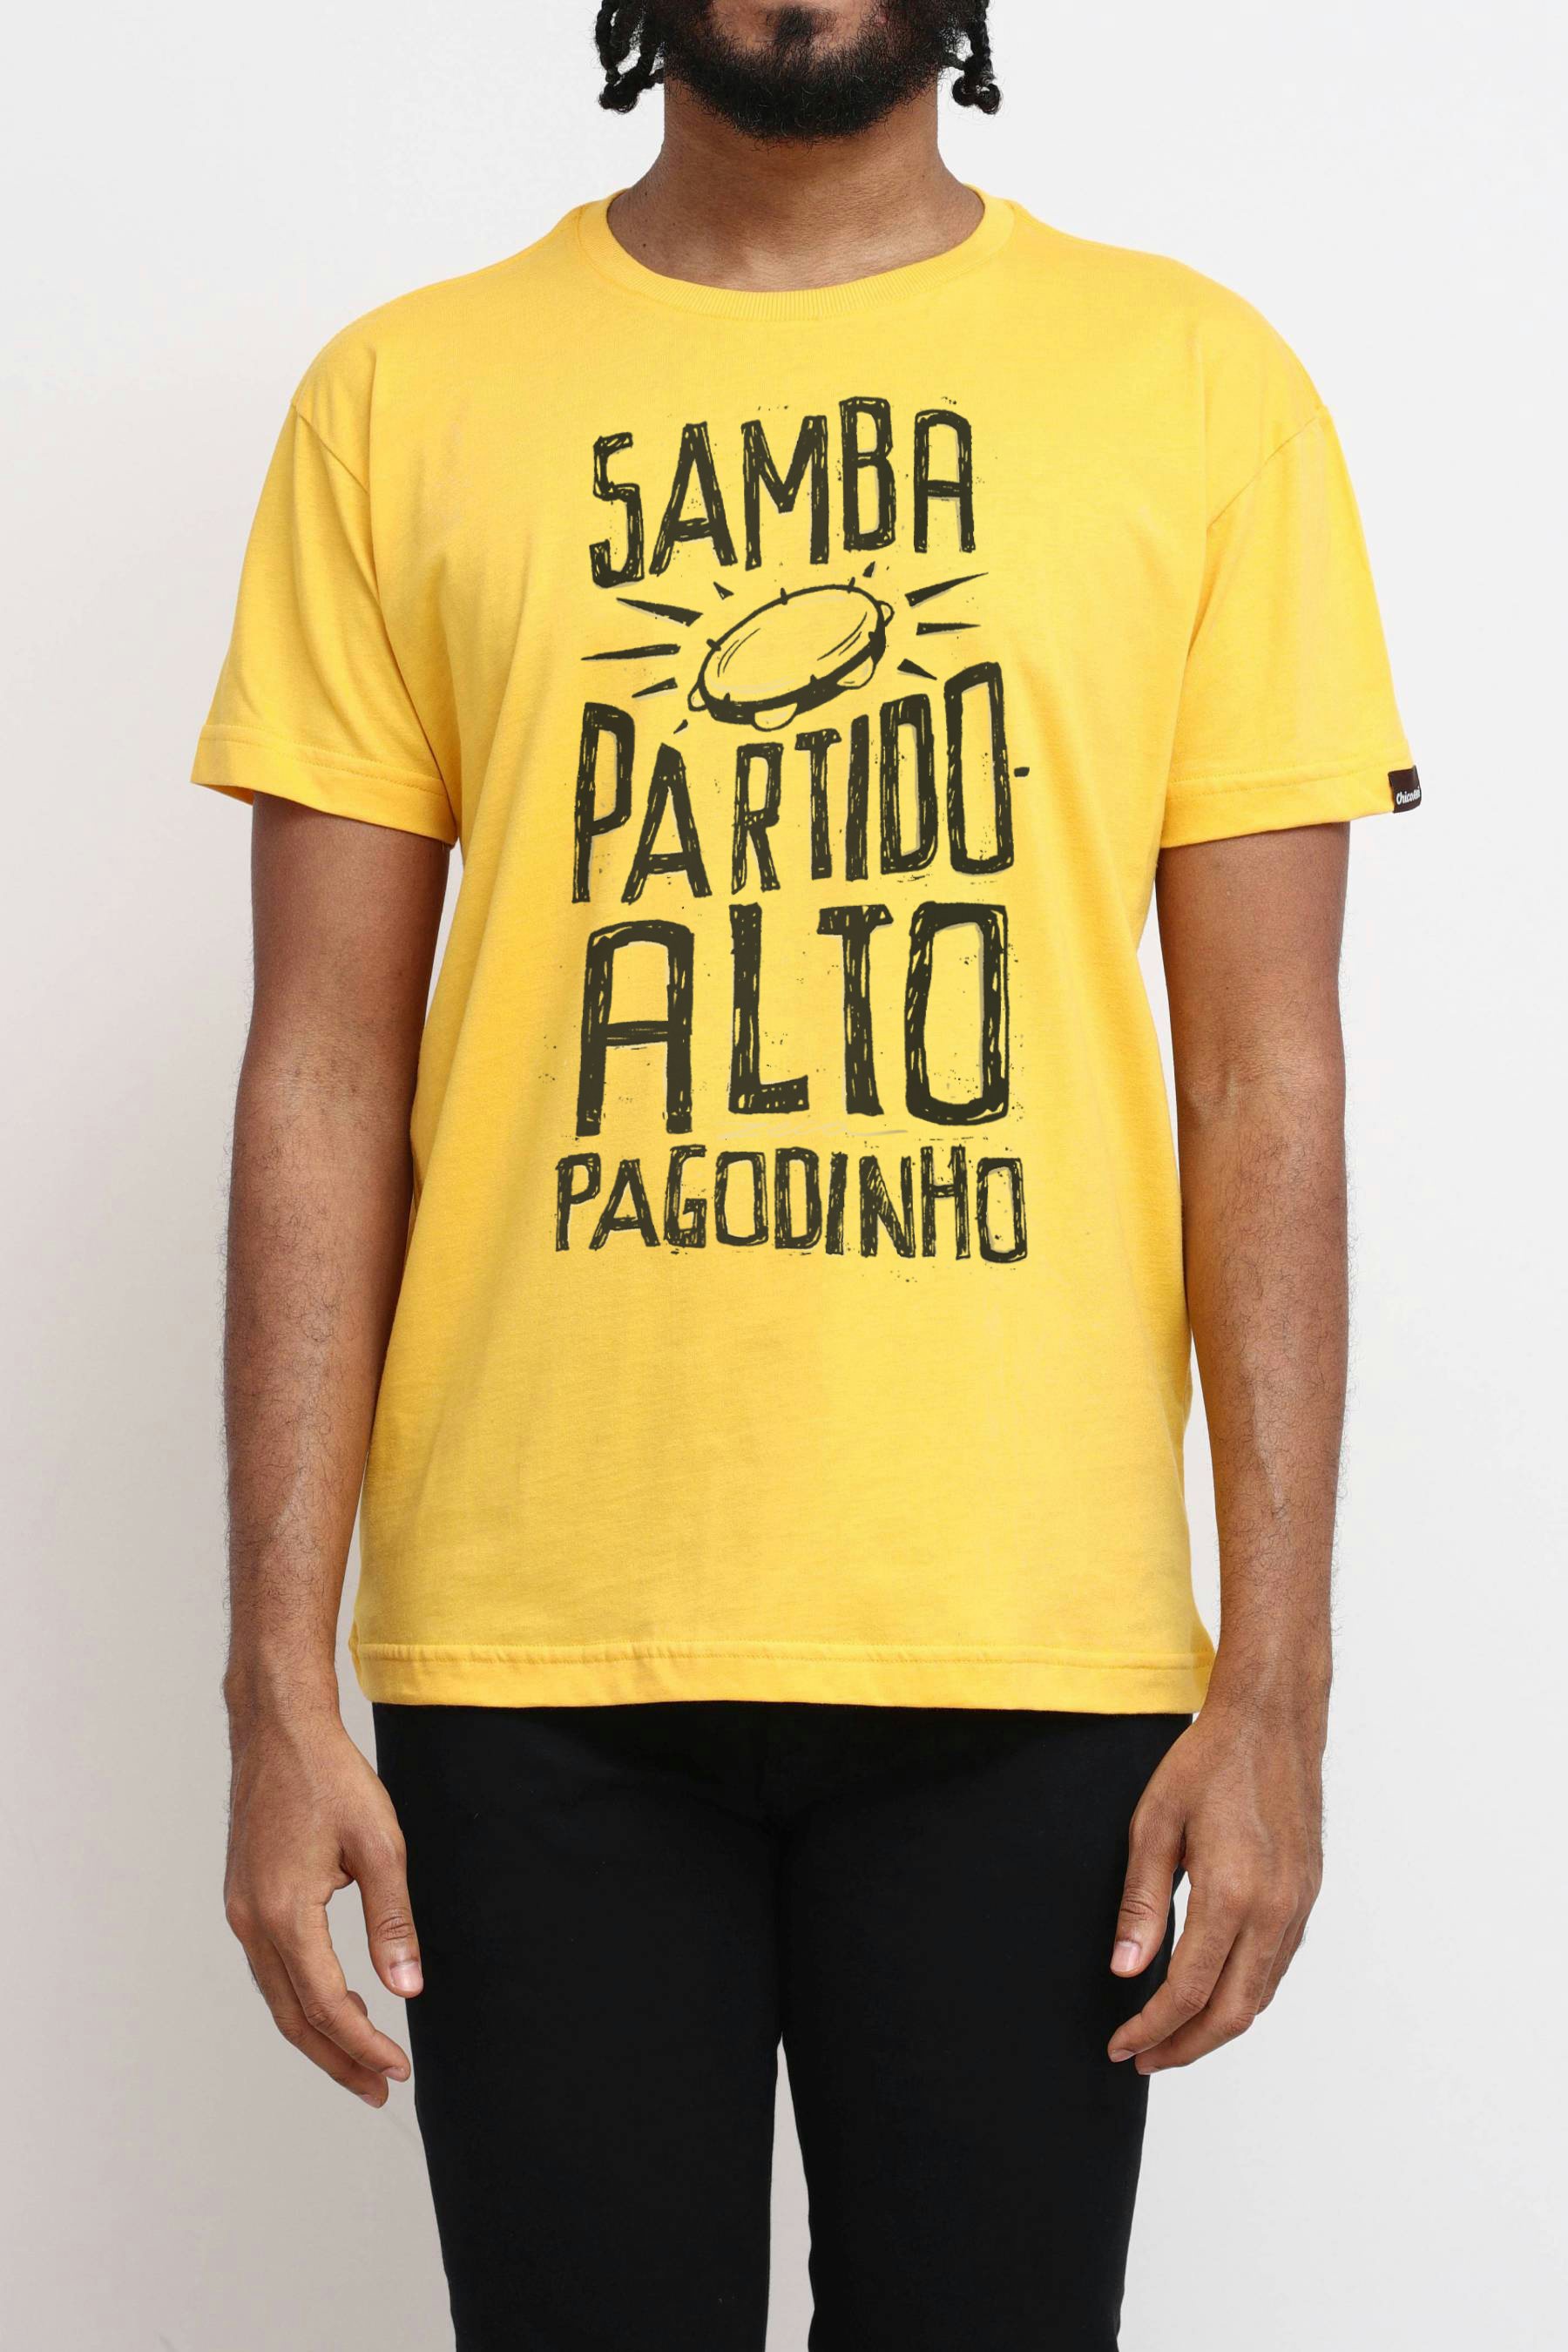 Camiseta Samba, Partido Alto, Pagodinho